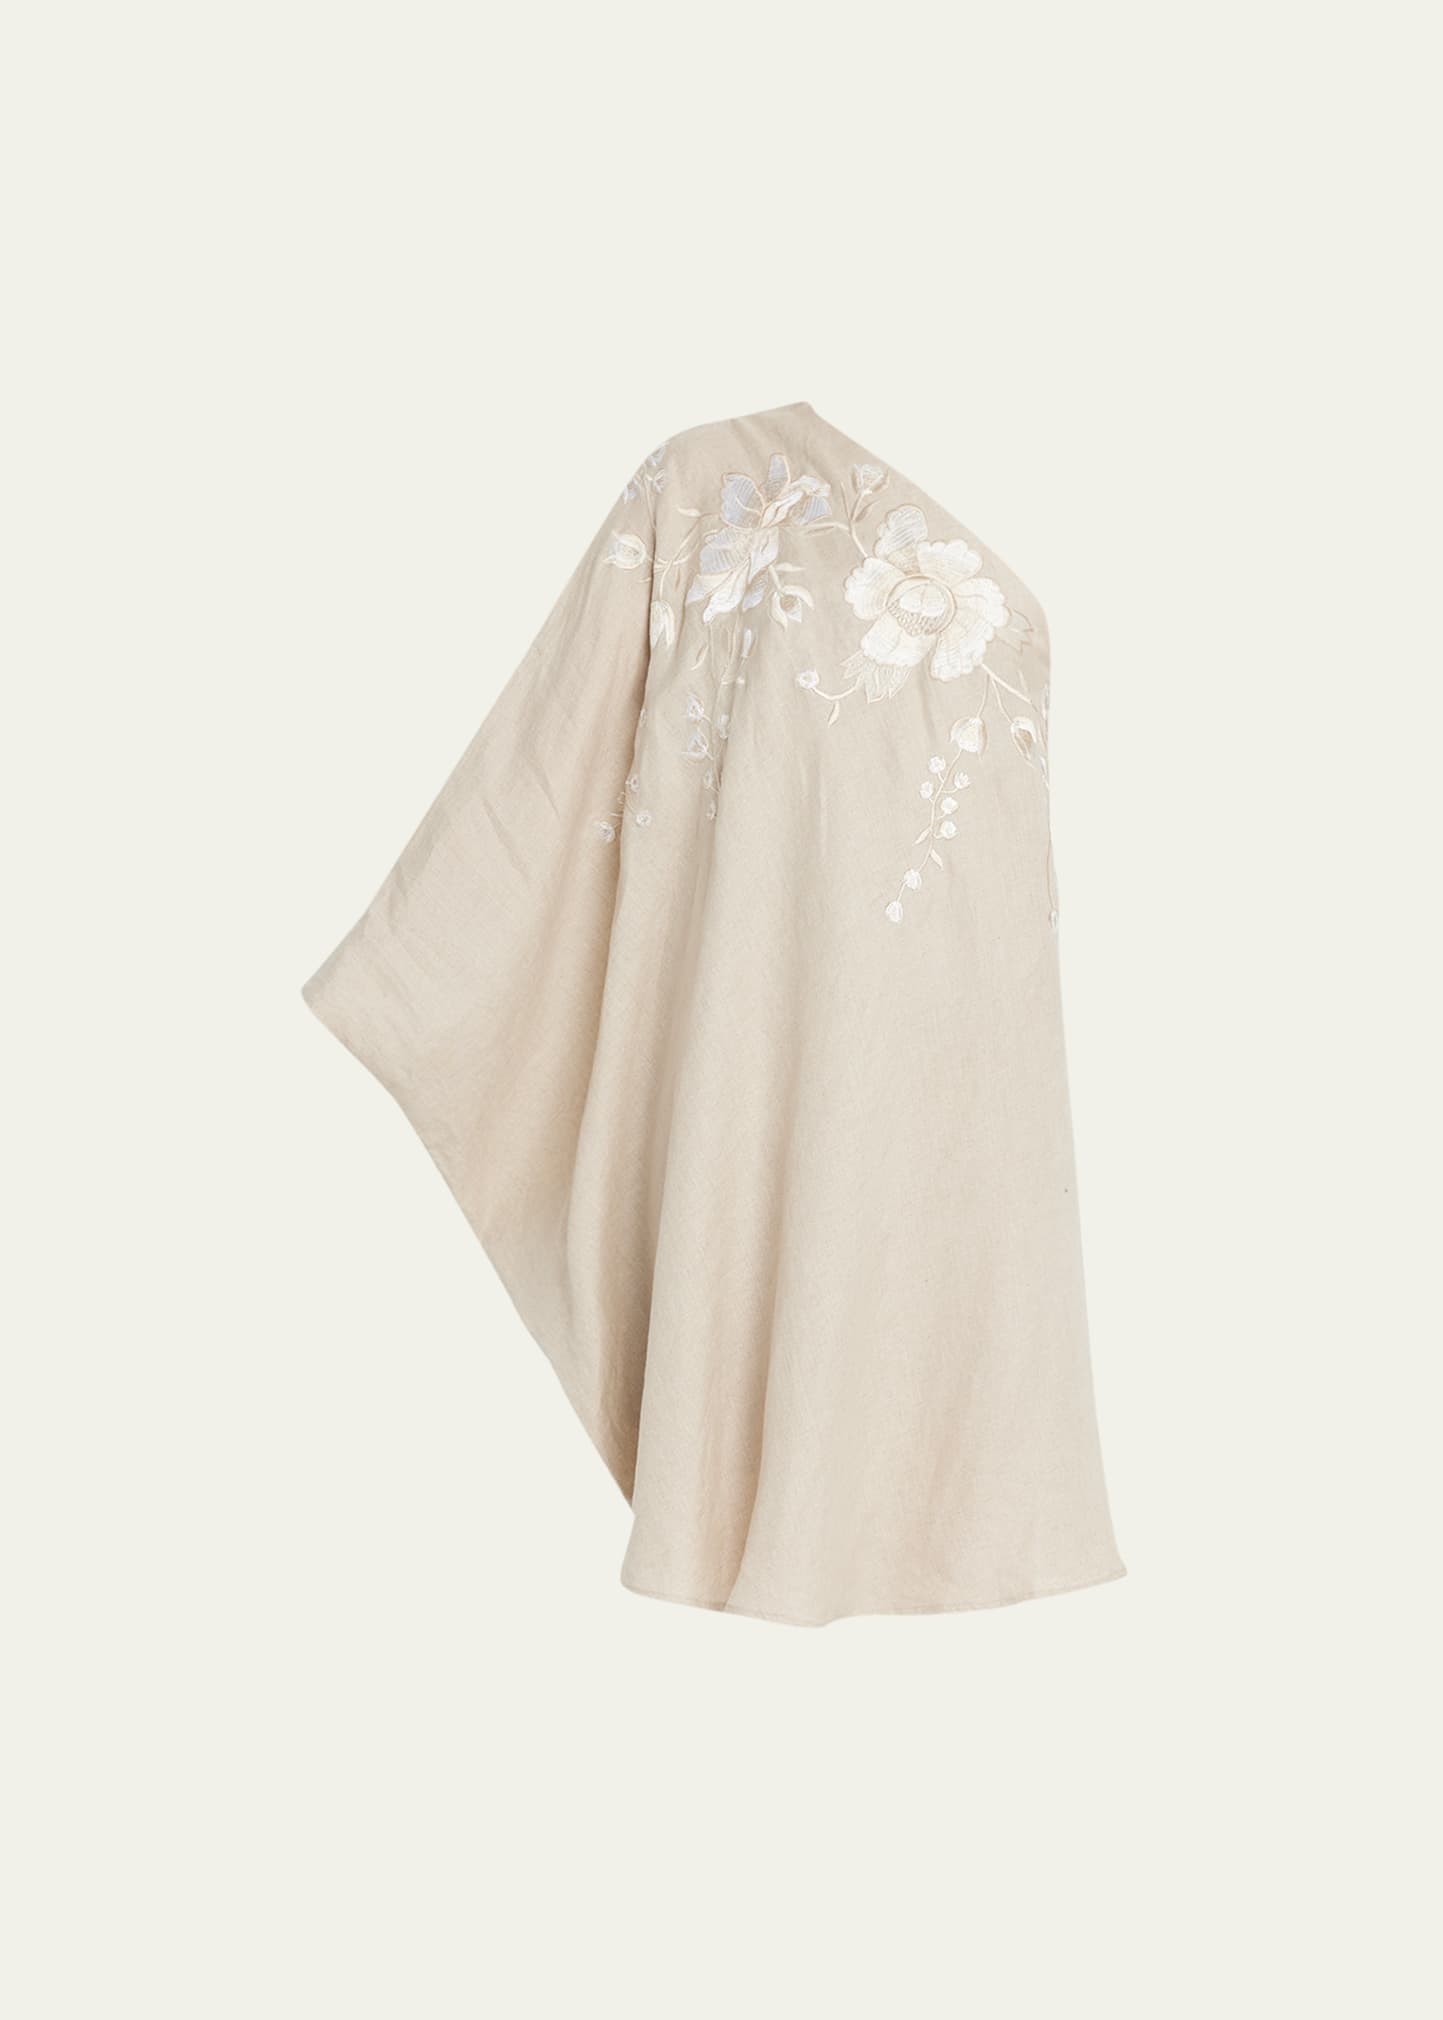 Josie Natori One-Shoulder Floral-Embroidered Midi Dress